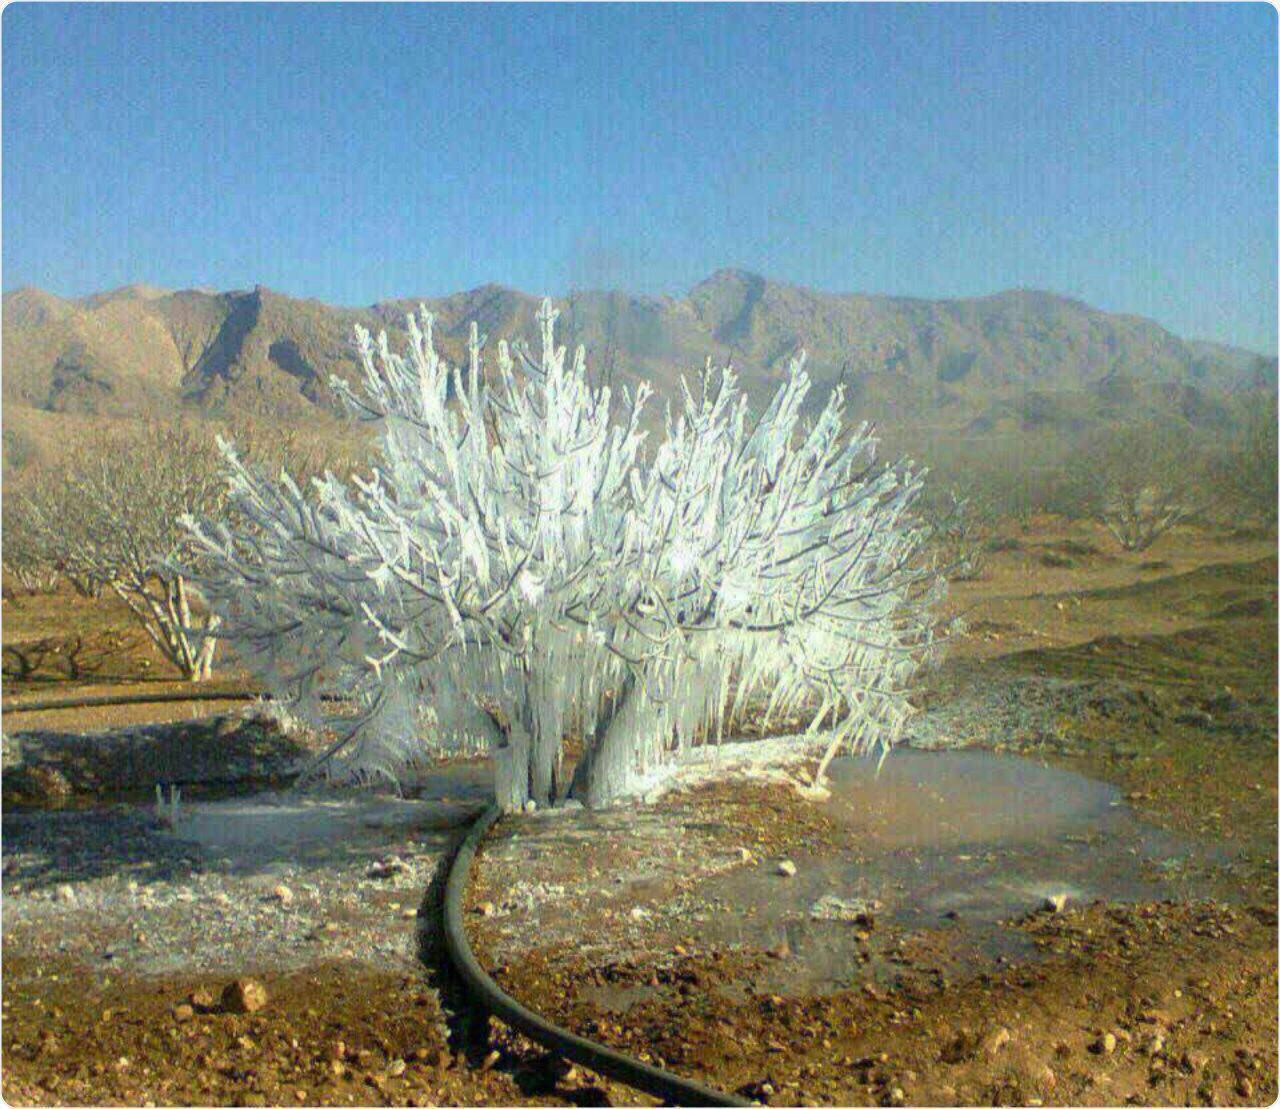 بوجود آمدن درخت یخی بر اثر ترکیدن لوله آب در سرمای شدید